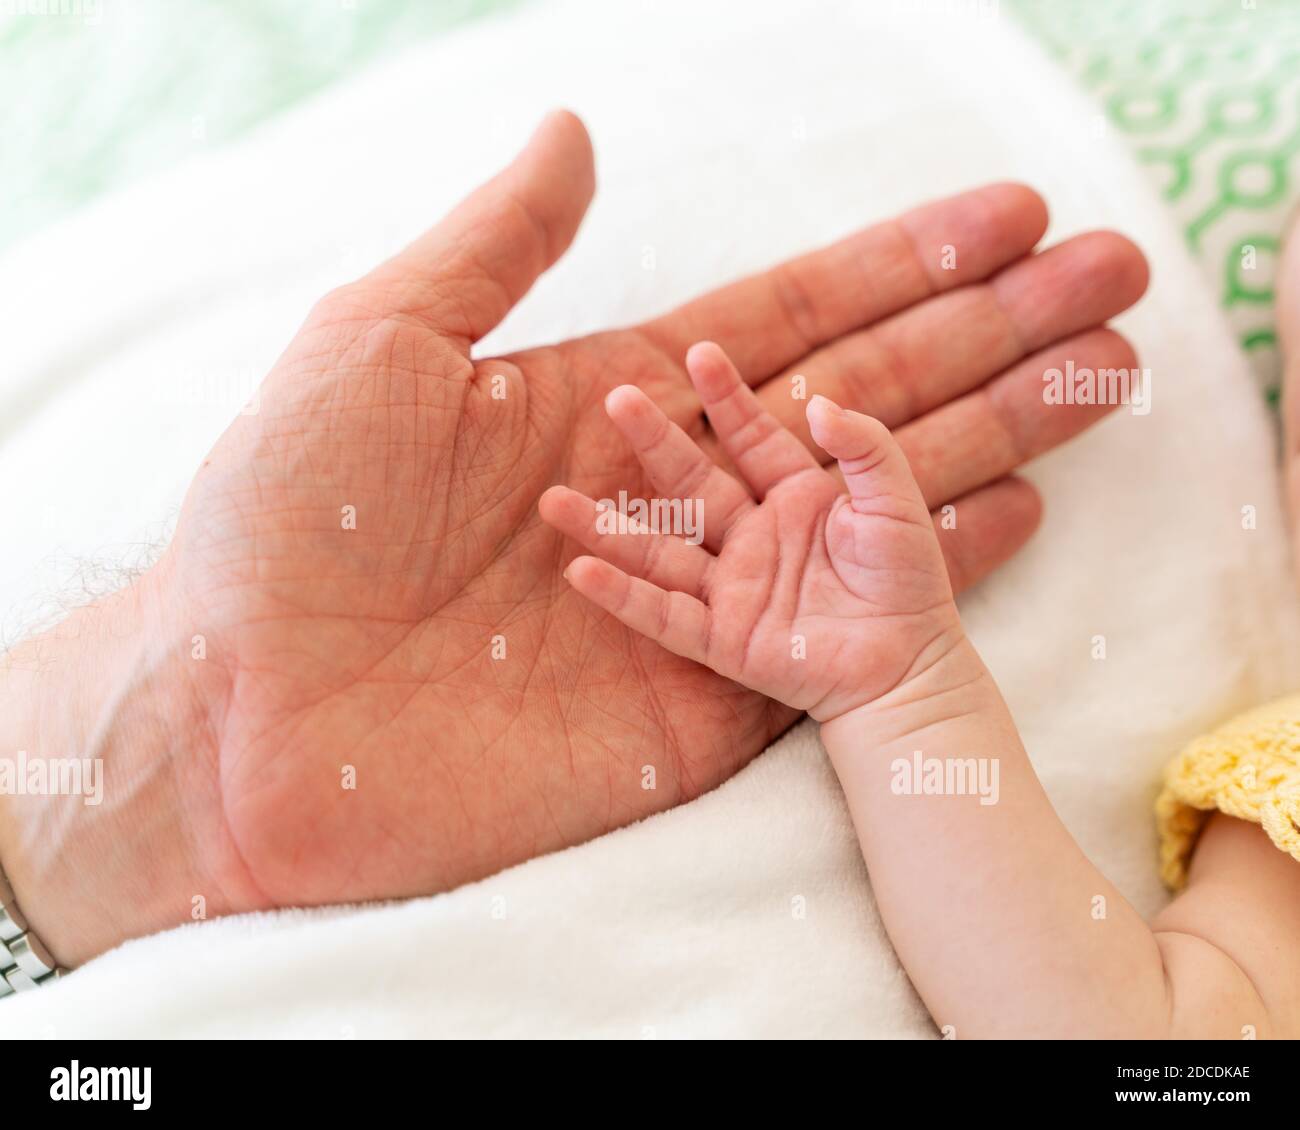 Kleine, niedliche Hand eines kaukasischen neugeborenen Mädchens/Jungen mit rosa Haut, die offen in der Hand seines Vaters oder seiner Mutter liegt und die Zeit miteinander genießt Stockfoto